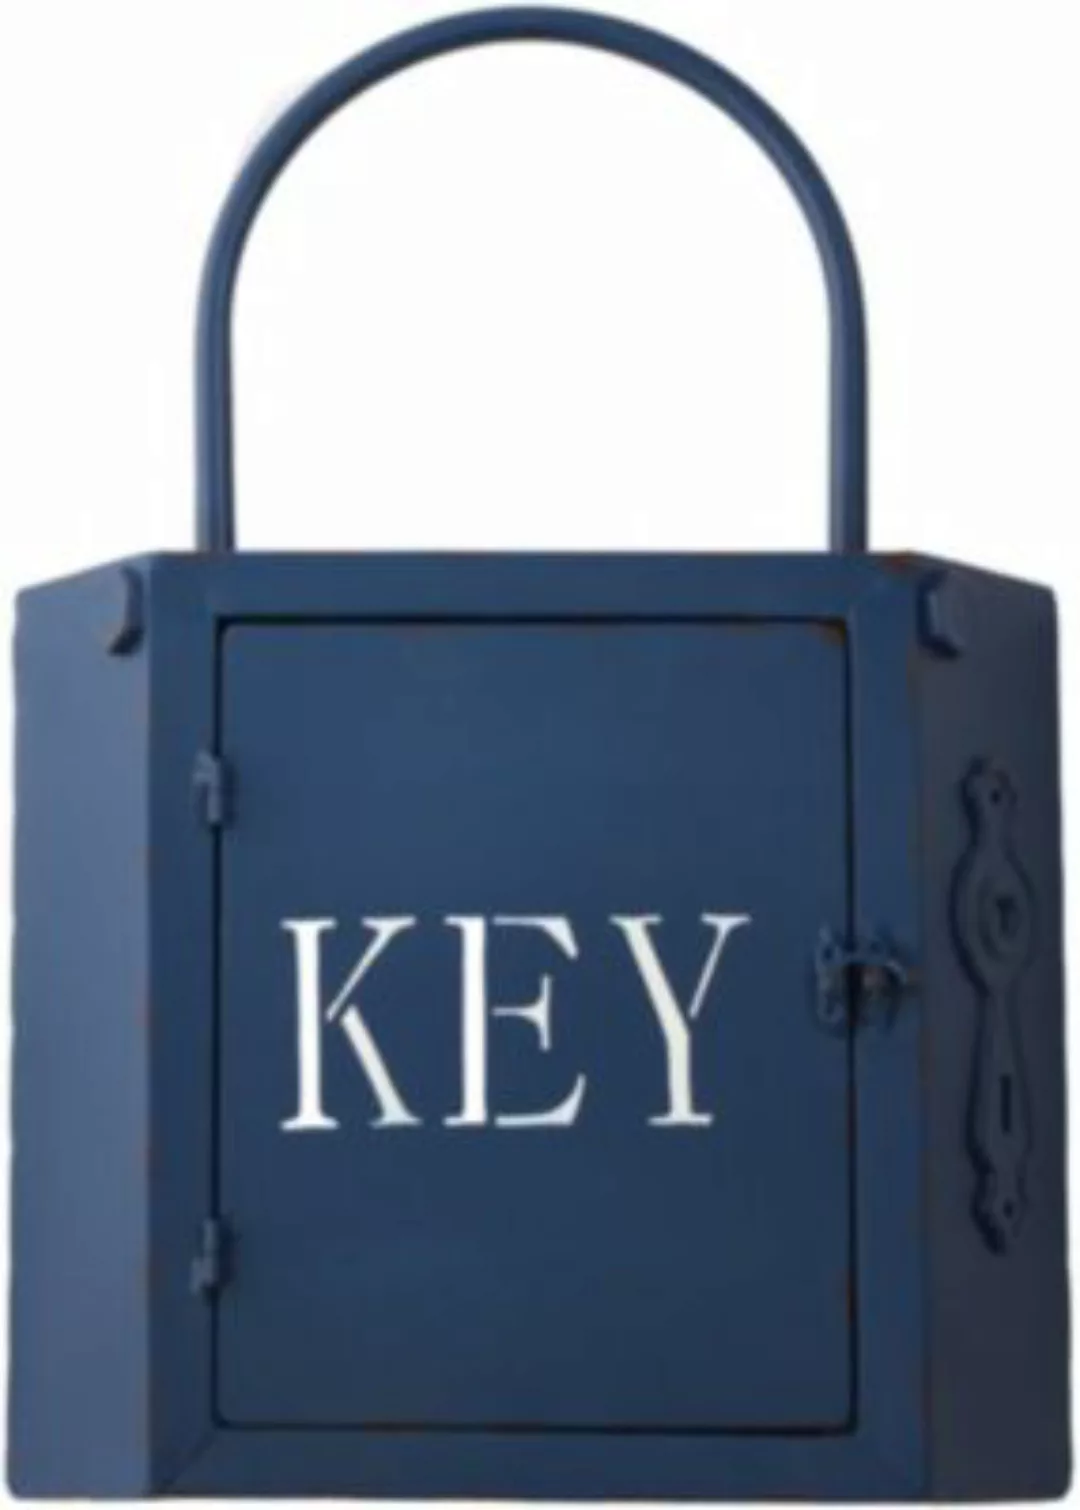 HTI-Line Retro Schlüsselkasten KEY blau günstig online kaufen